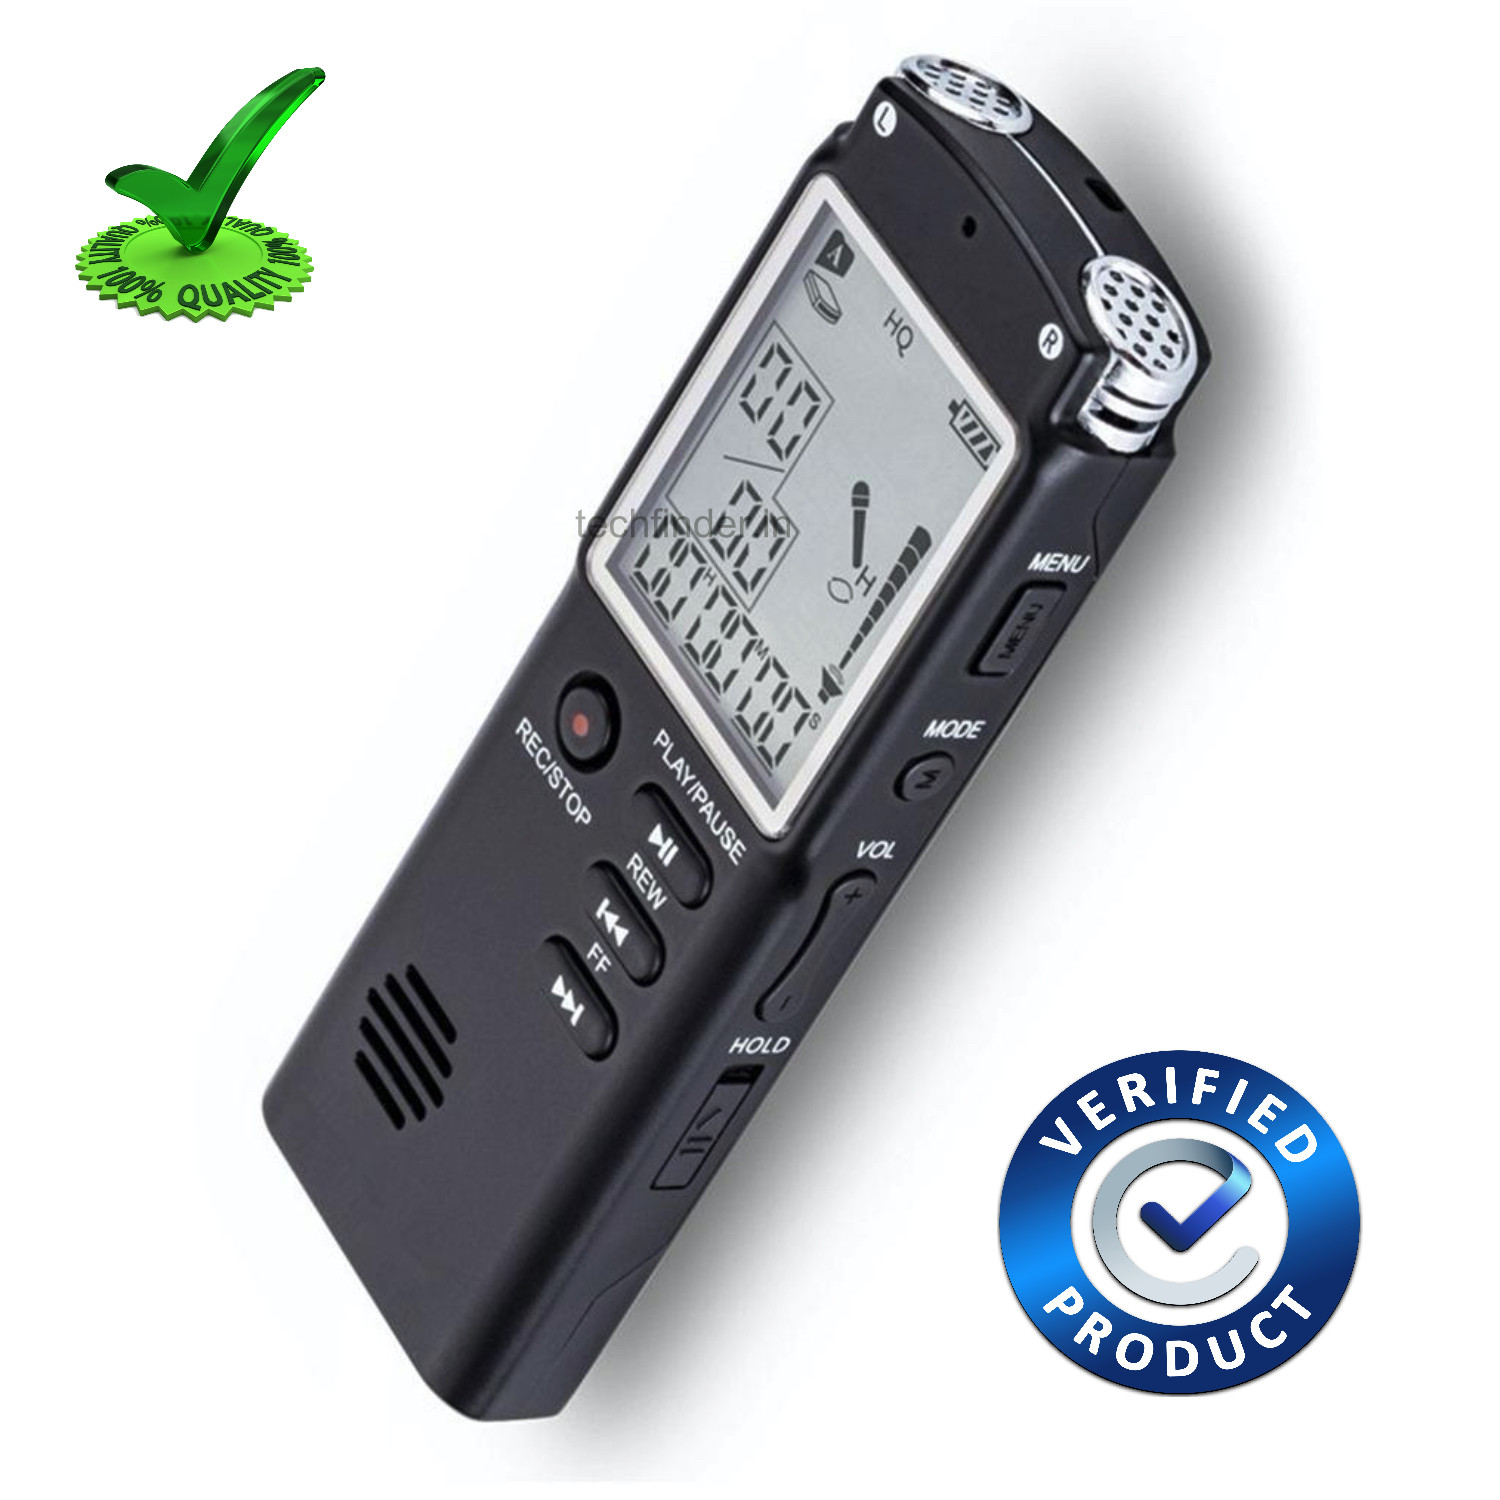 8GB Digital Audio Voice Recorder